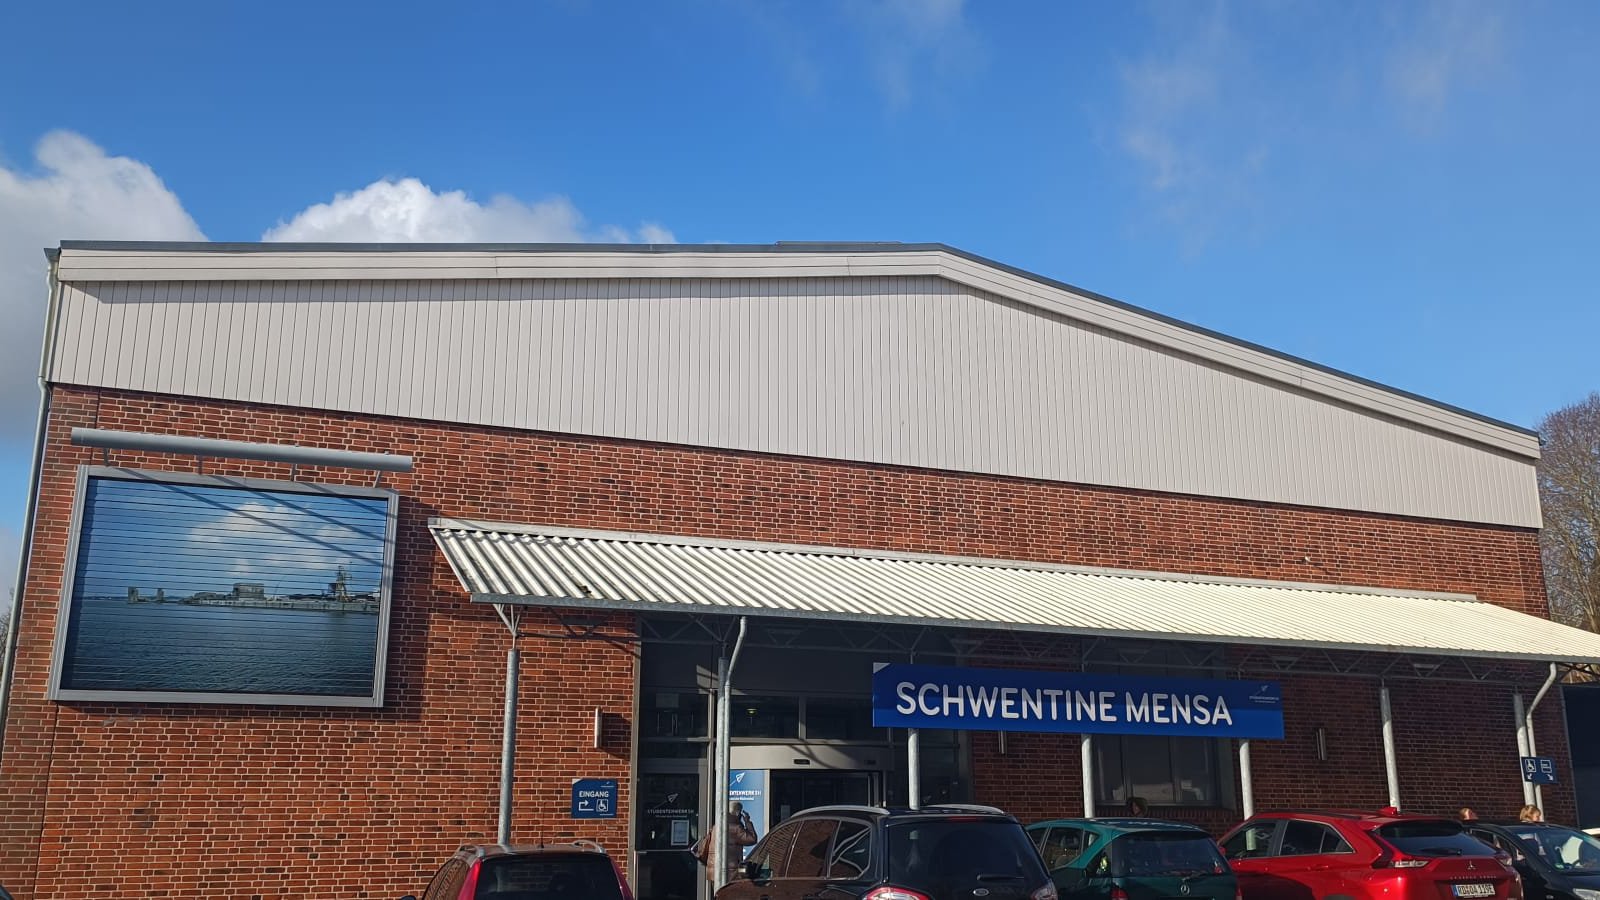 Ein Backsteingebäude mit der Aufschrift "Schwentine-Mensa". Im Vordergrund parken Autos, im Hintergrund ein beinahe wolkenloser Himmel.